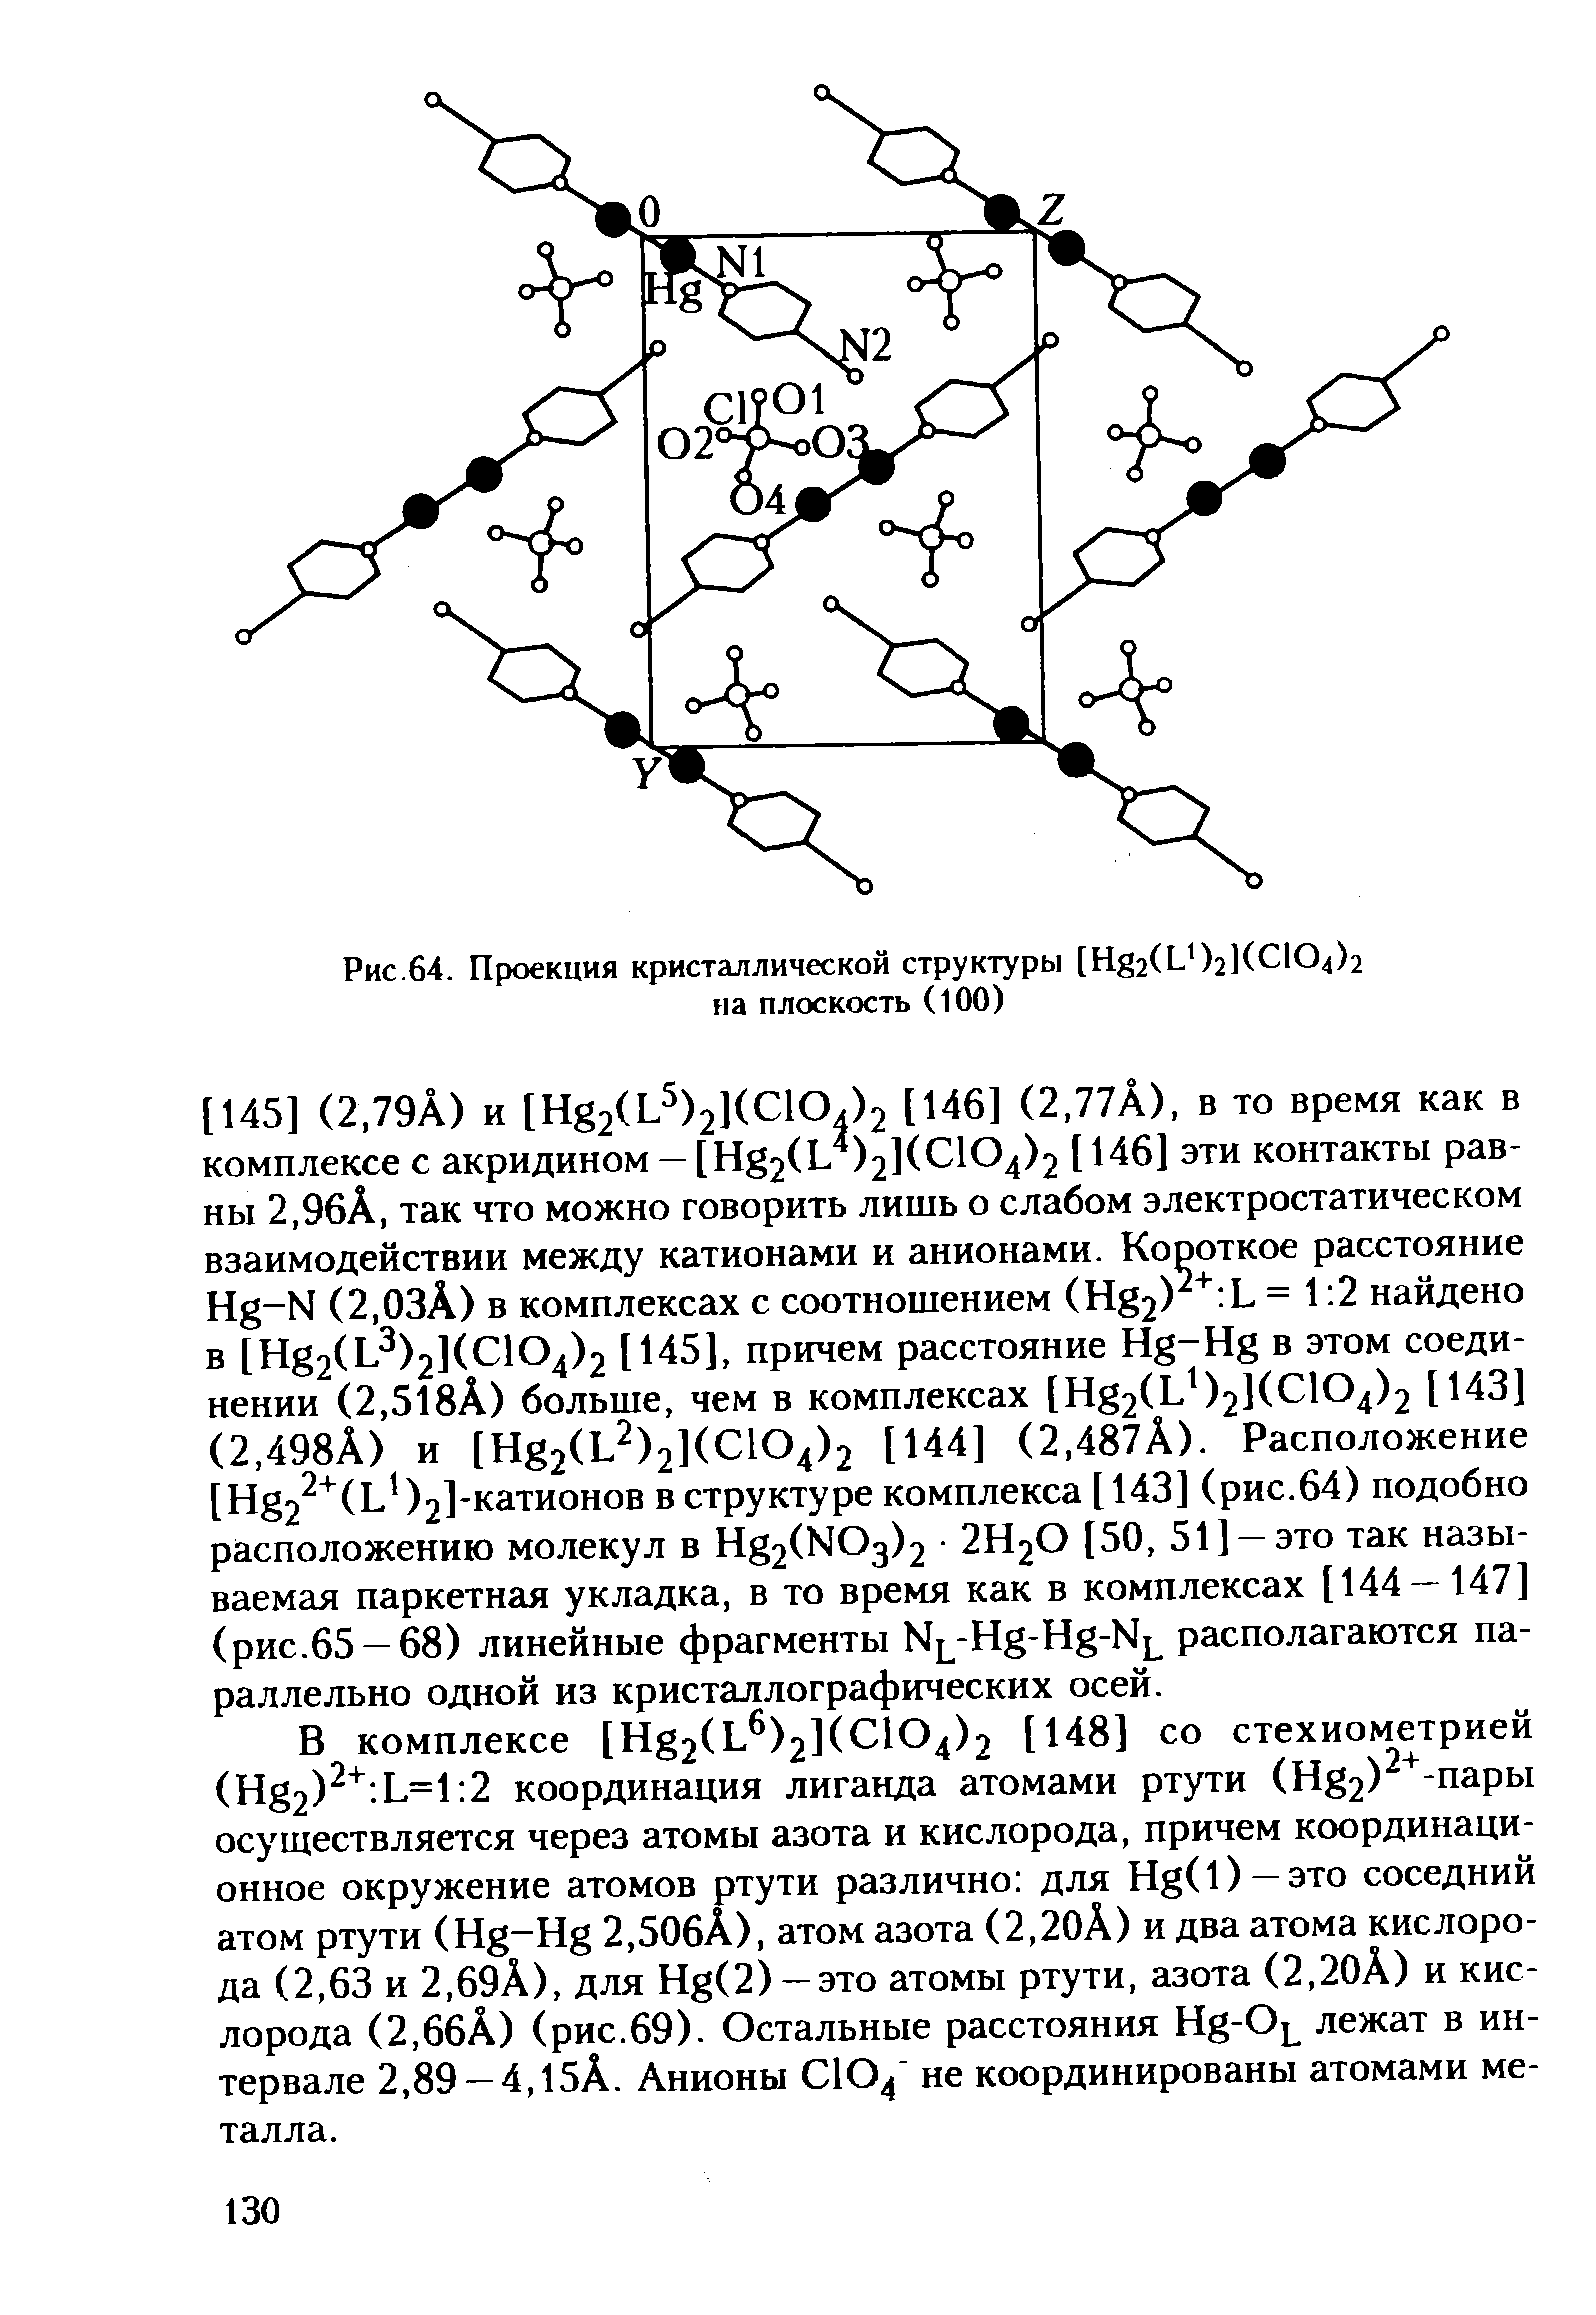 В комплексе [Hg2(L )2]( 104)2 [148] со стехиометрией (Hg2) . L=l 2 координация лиганда атомами ртути (Hg2) -пapы осуществляется через атомы азота и кислорода, причем координационное окружение атомов ртути различно для Hg(l) —это соседний атом ртути (Hg-Hg 2,50бА), атом азота (2,20А) и два атома кислорода (2,63 и 2,69А), для Hg(2) —это атомы ртути, азота (2,20А) и кислорода (2,66Л) (рис.69). Остальные расстояния Hg-O лежат в интервале 2,89 —4, 15А. Анионы СЮ не координированы атомами металла.